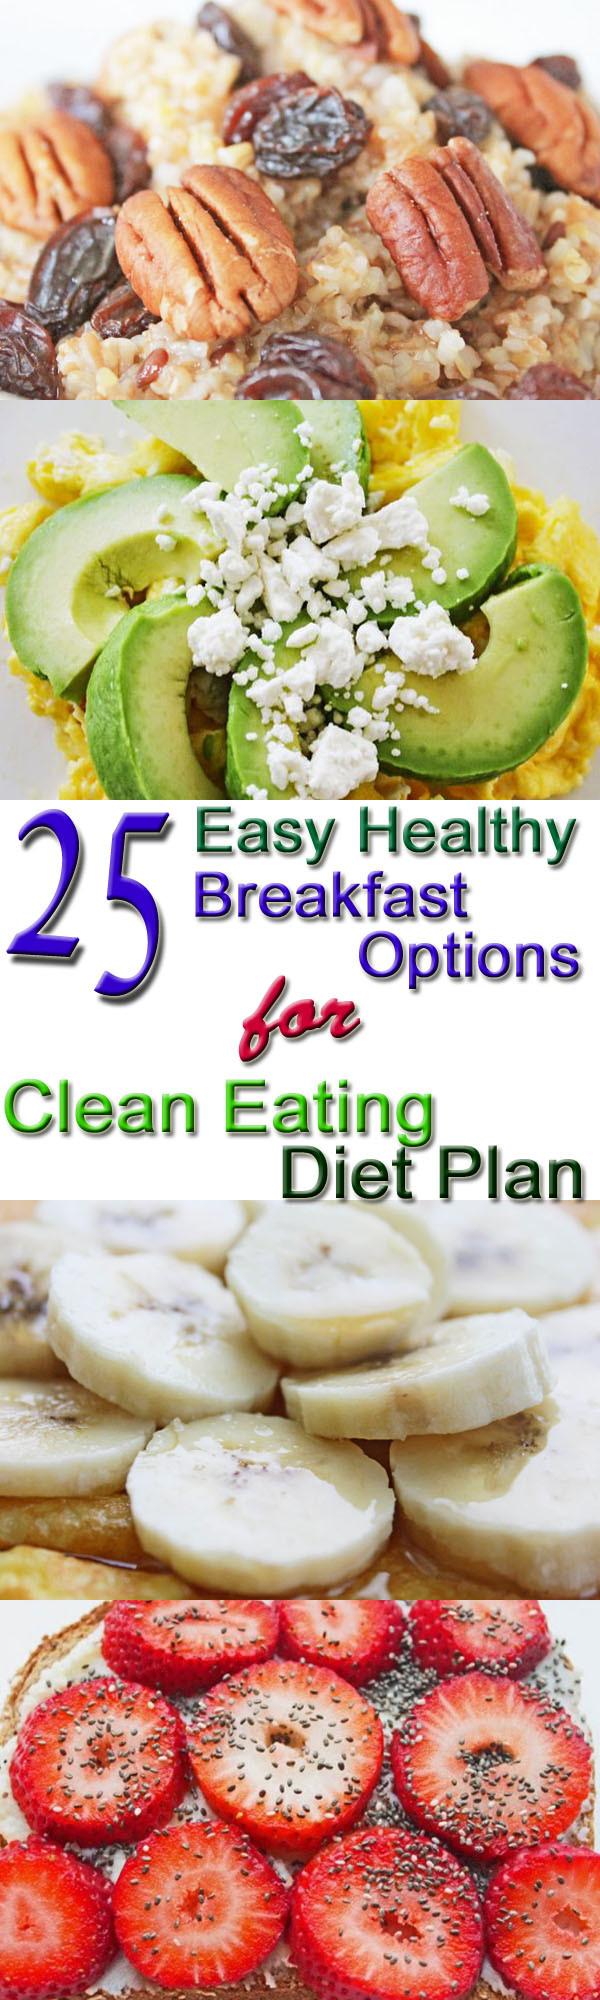 Clean Eating Breakfast Options
 25 Healthy Breakfast Options